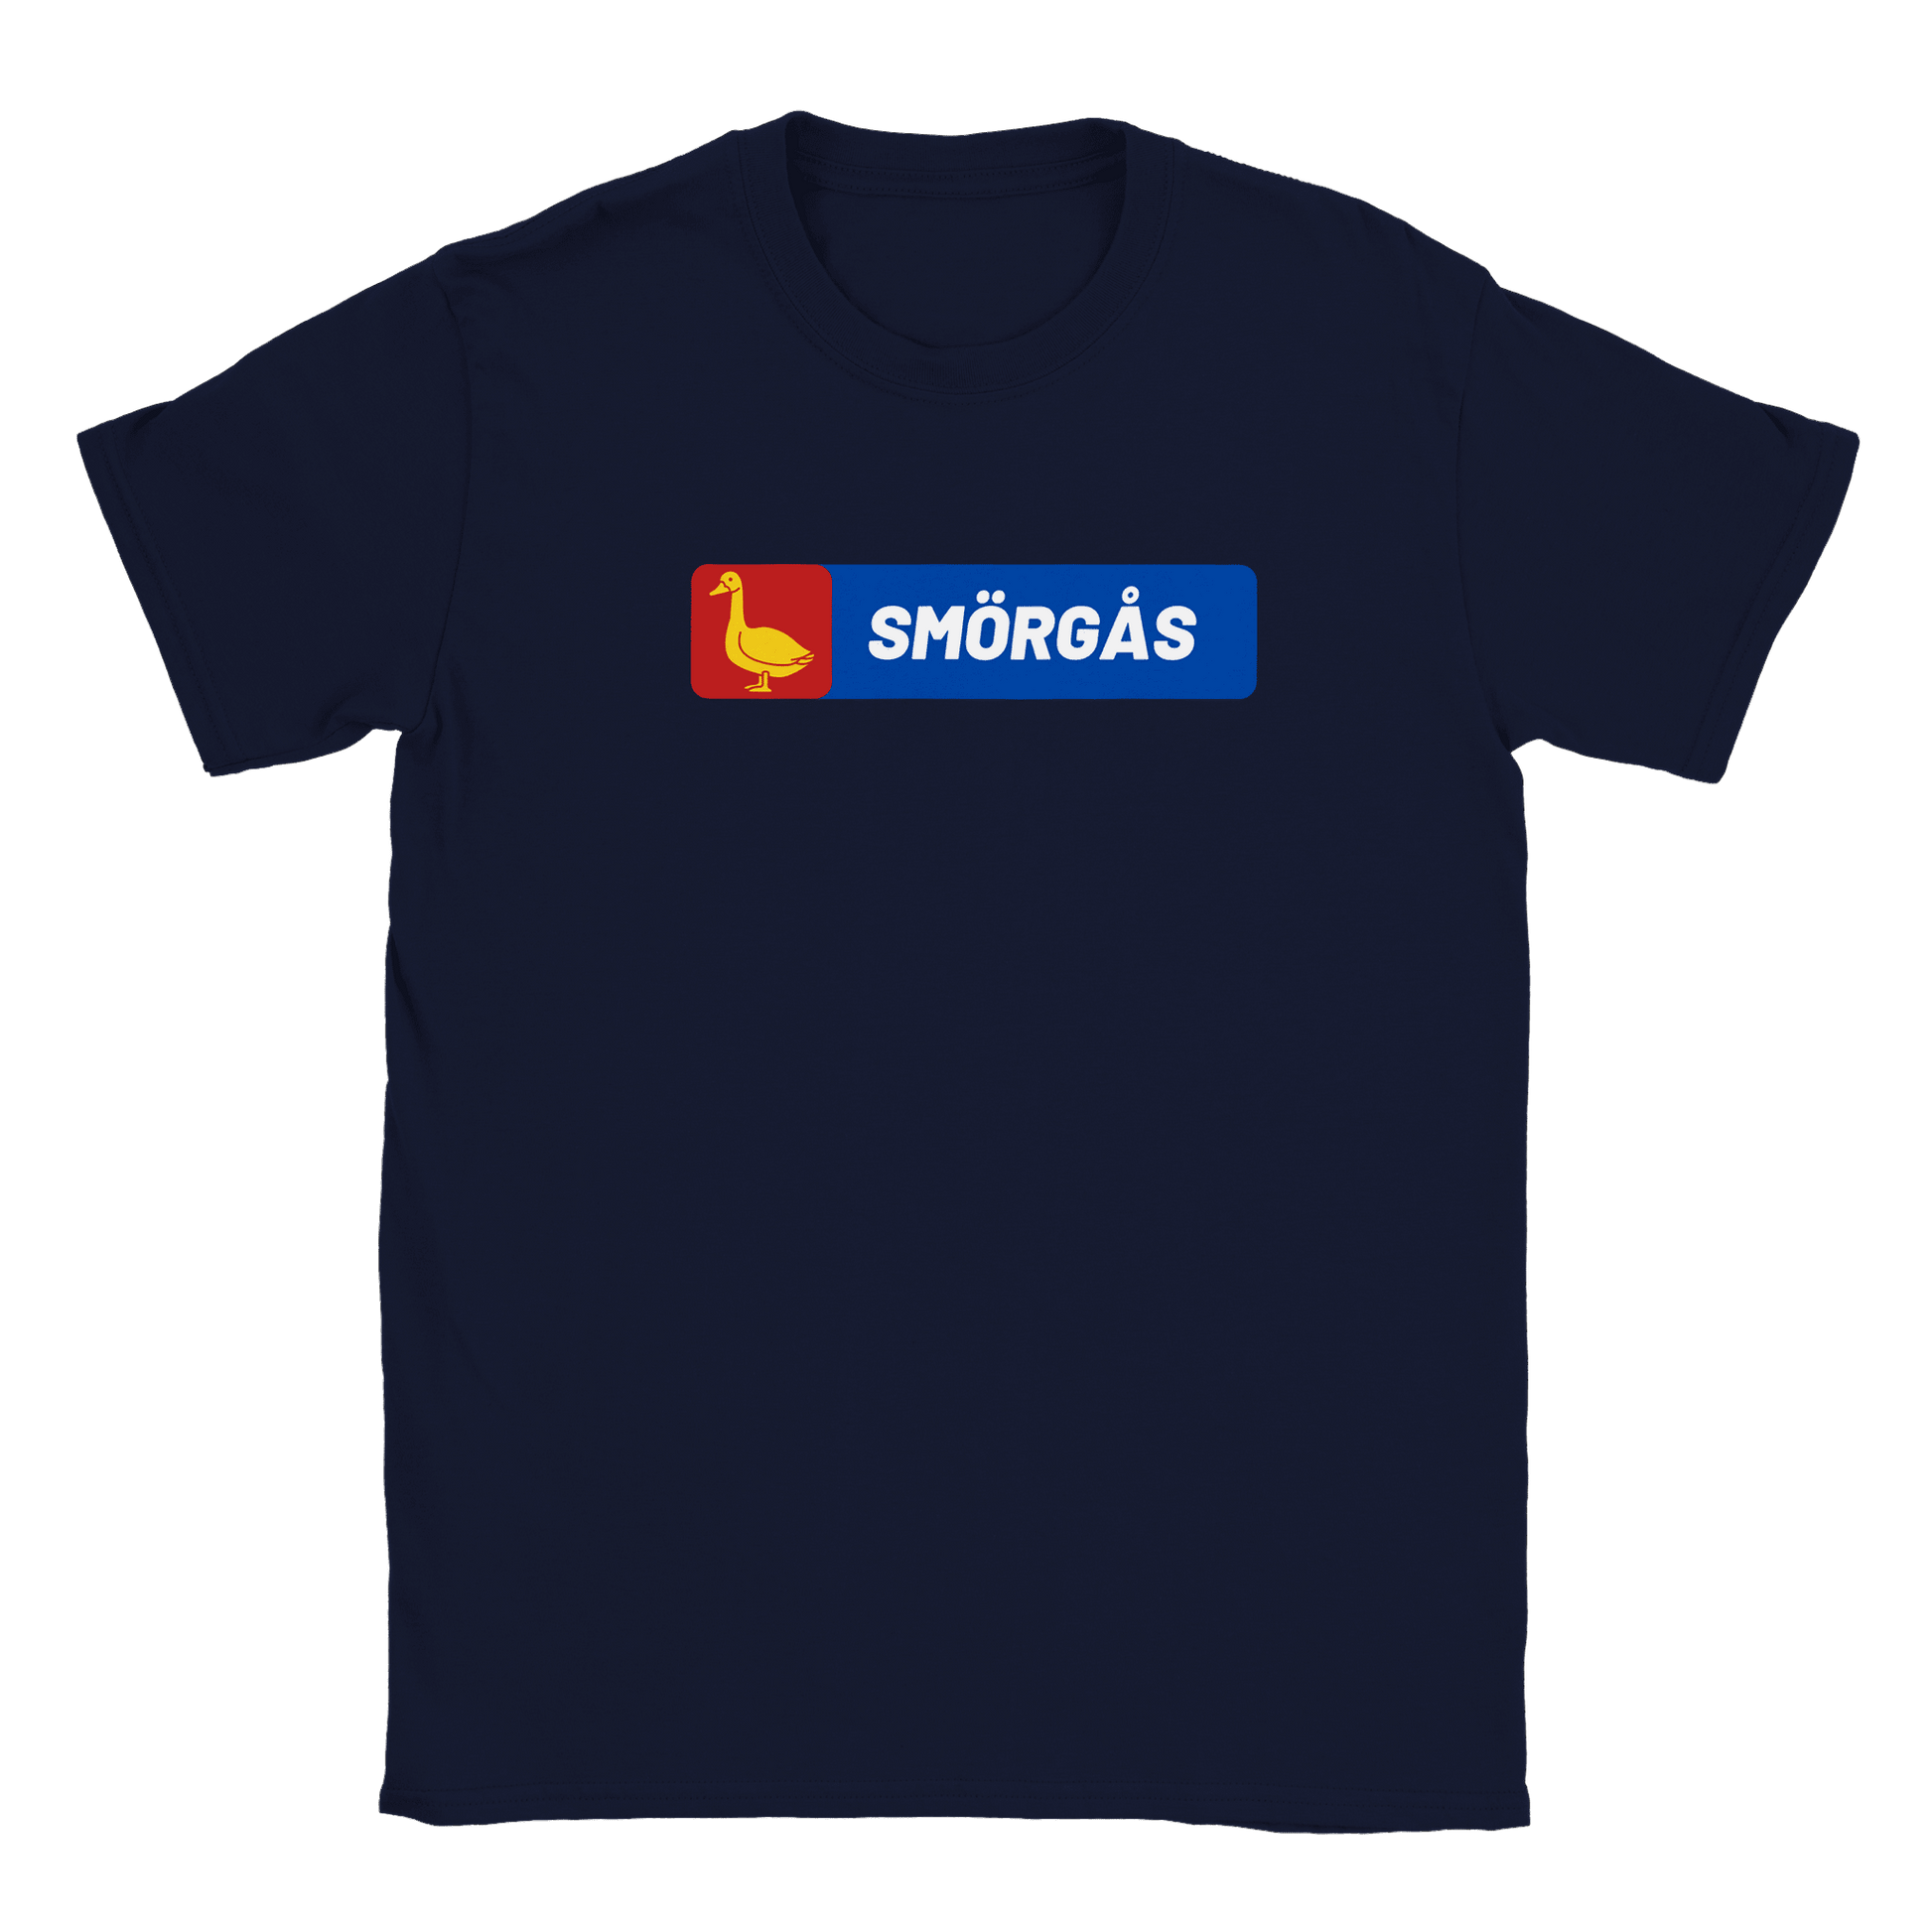 Smörgås - T-shirt Navy